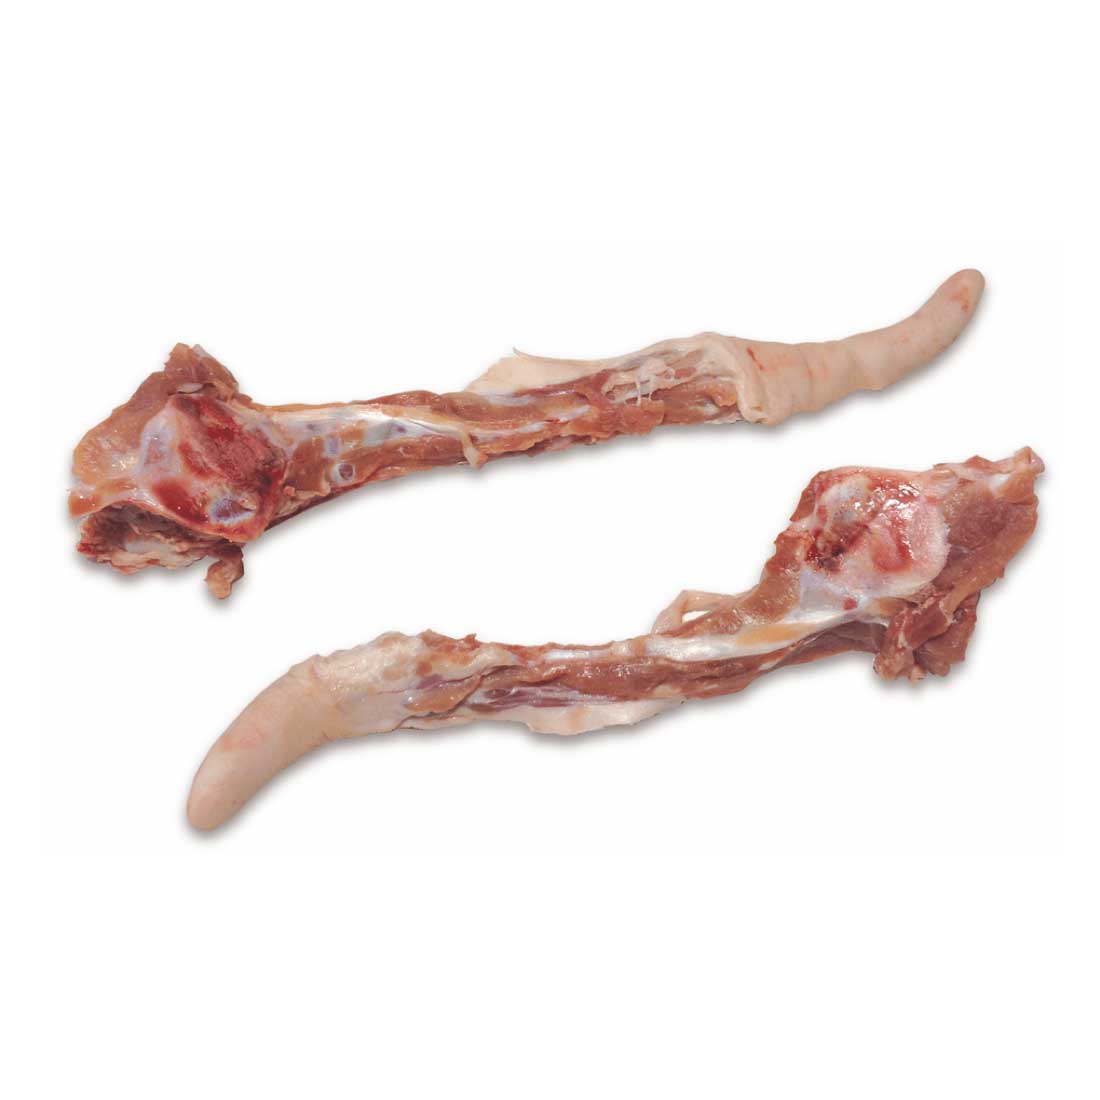 Frozen Pork Tail with Bone » ALIMENTOS GROLE S.A. DE C.V.